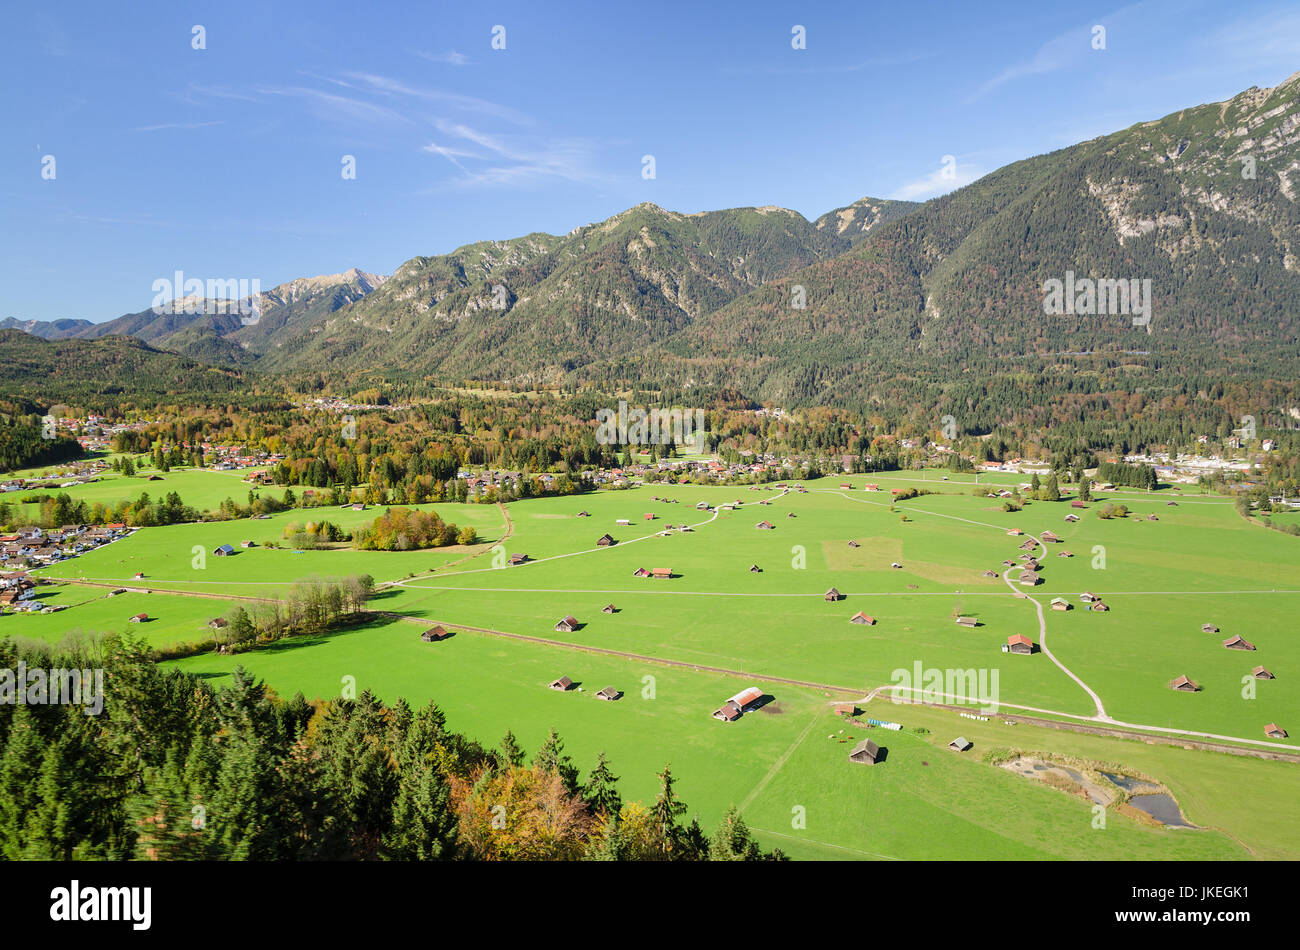 Vue aérienne de Alpine valley bavaroise avec des pâturages verts dans la région de Garmisch-Partenkirchen Banque D'Images